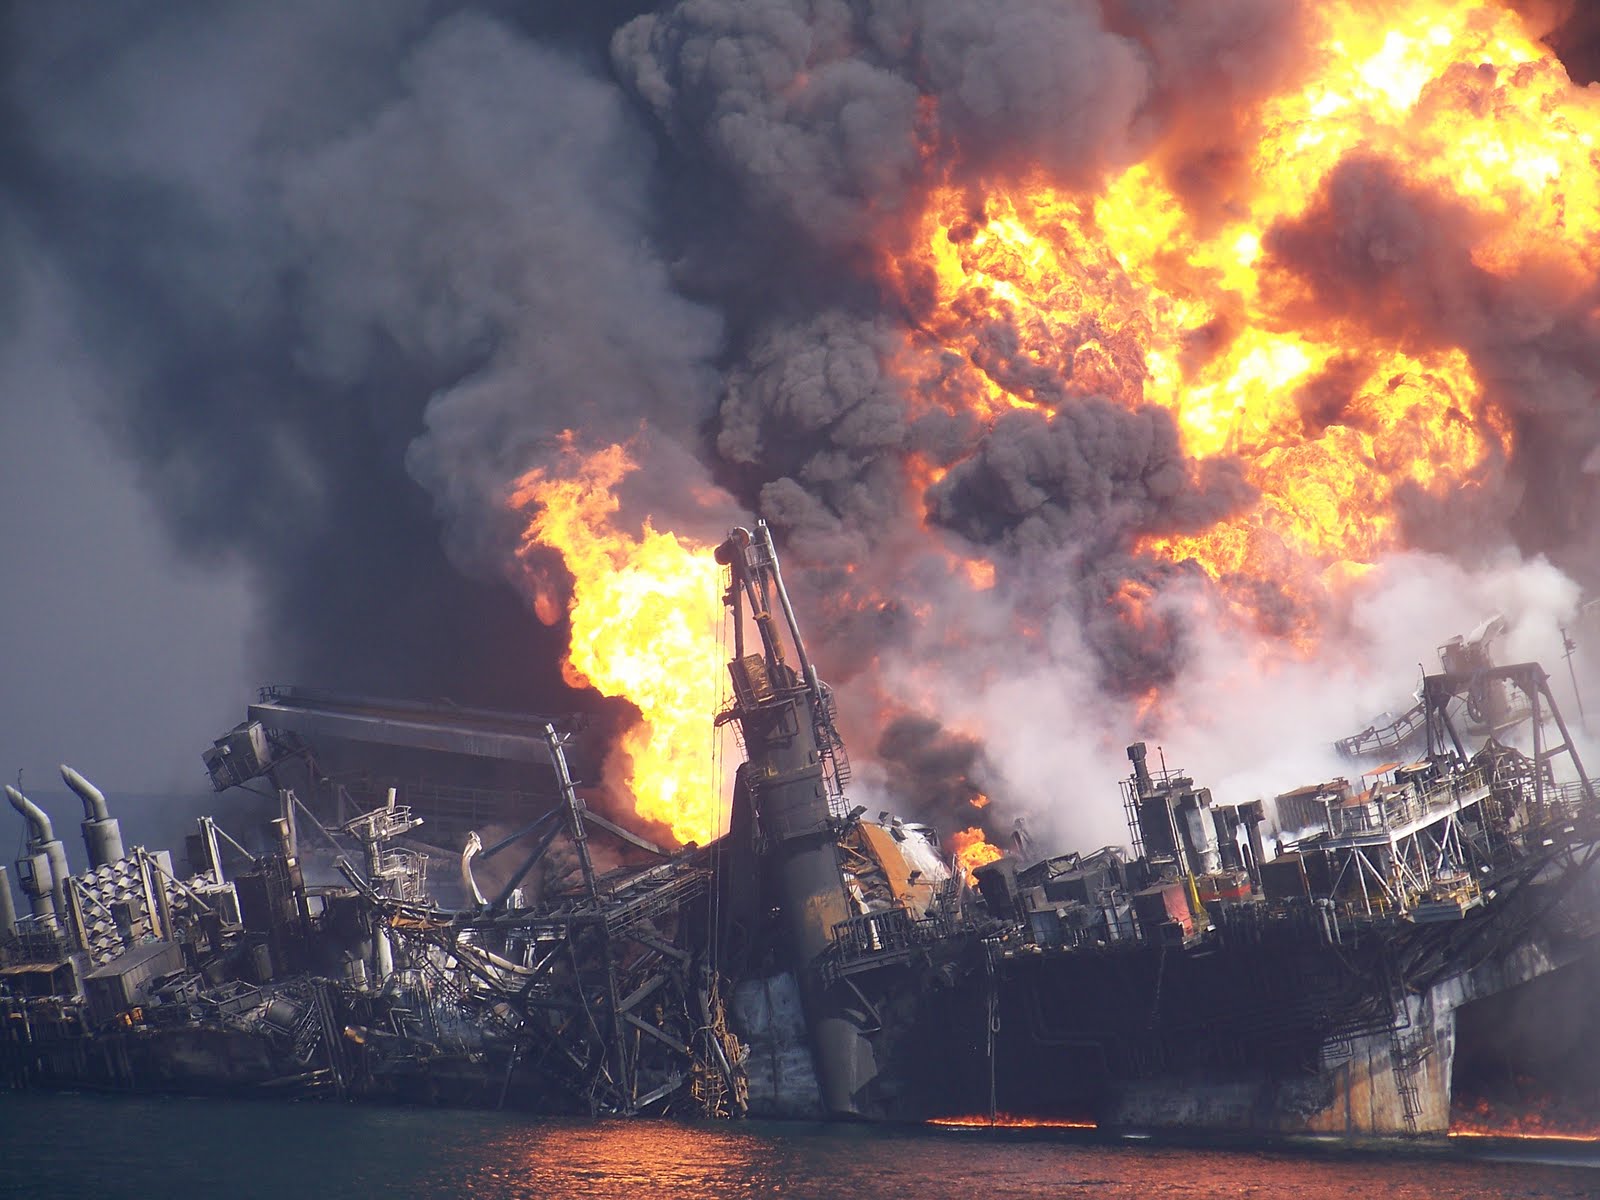 30 апреля 2010. Дипвотер хорайзон. Взрыв нефтяной платформы Deepwater Horizon. Взрыв нефтяной платформы в мексиканском заливе 20 апреля 2010. Взрыв нефтяной платформы Deepwater Horizon - 20 апреля 2010 года.